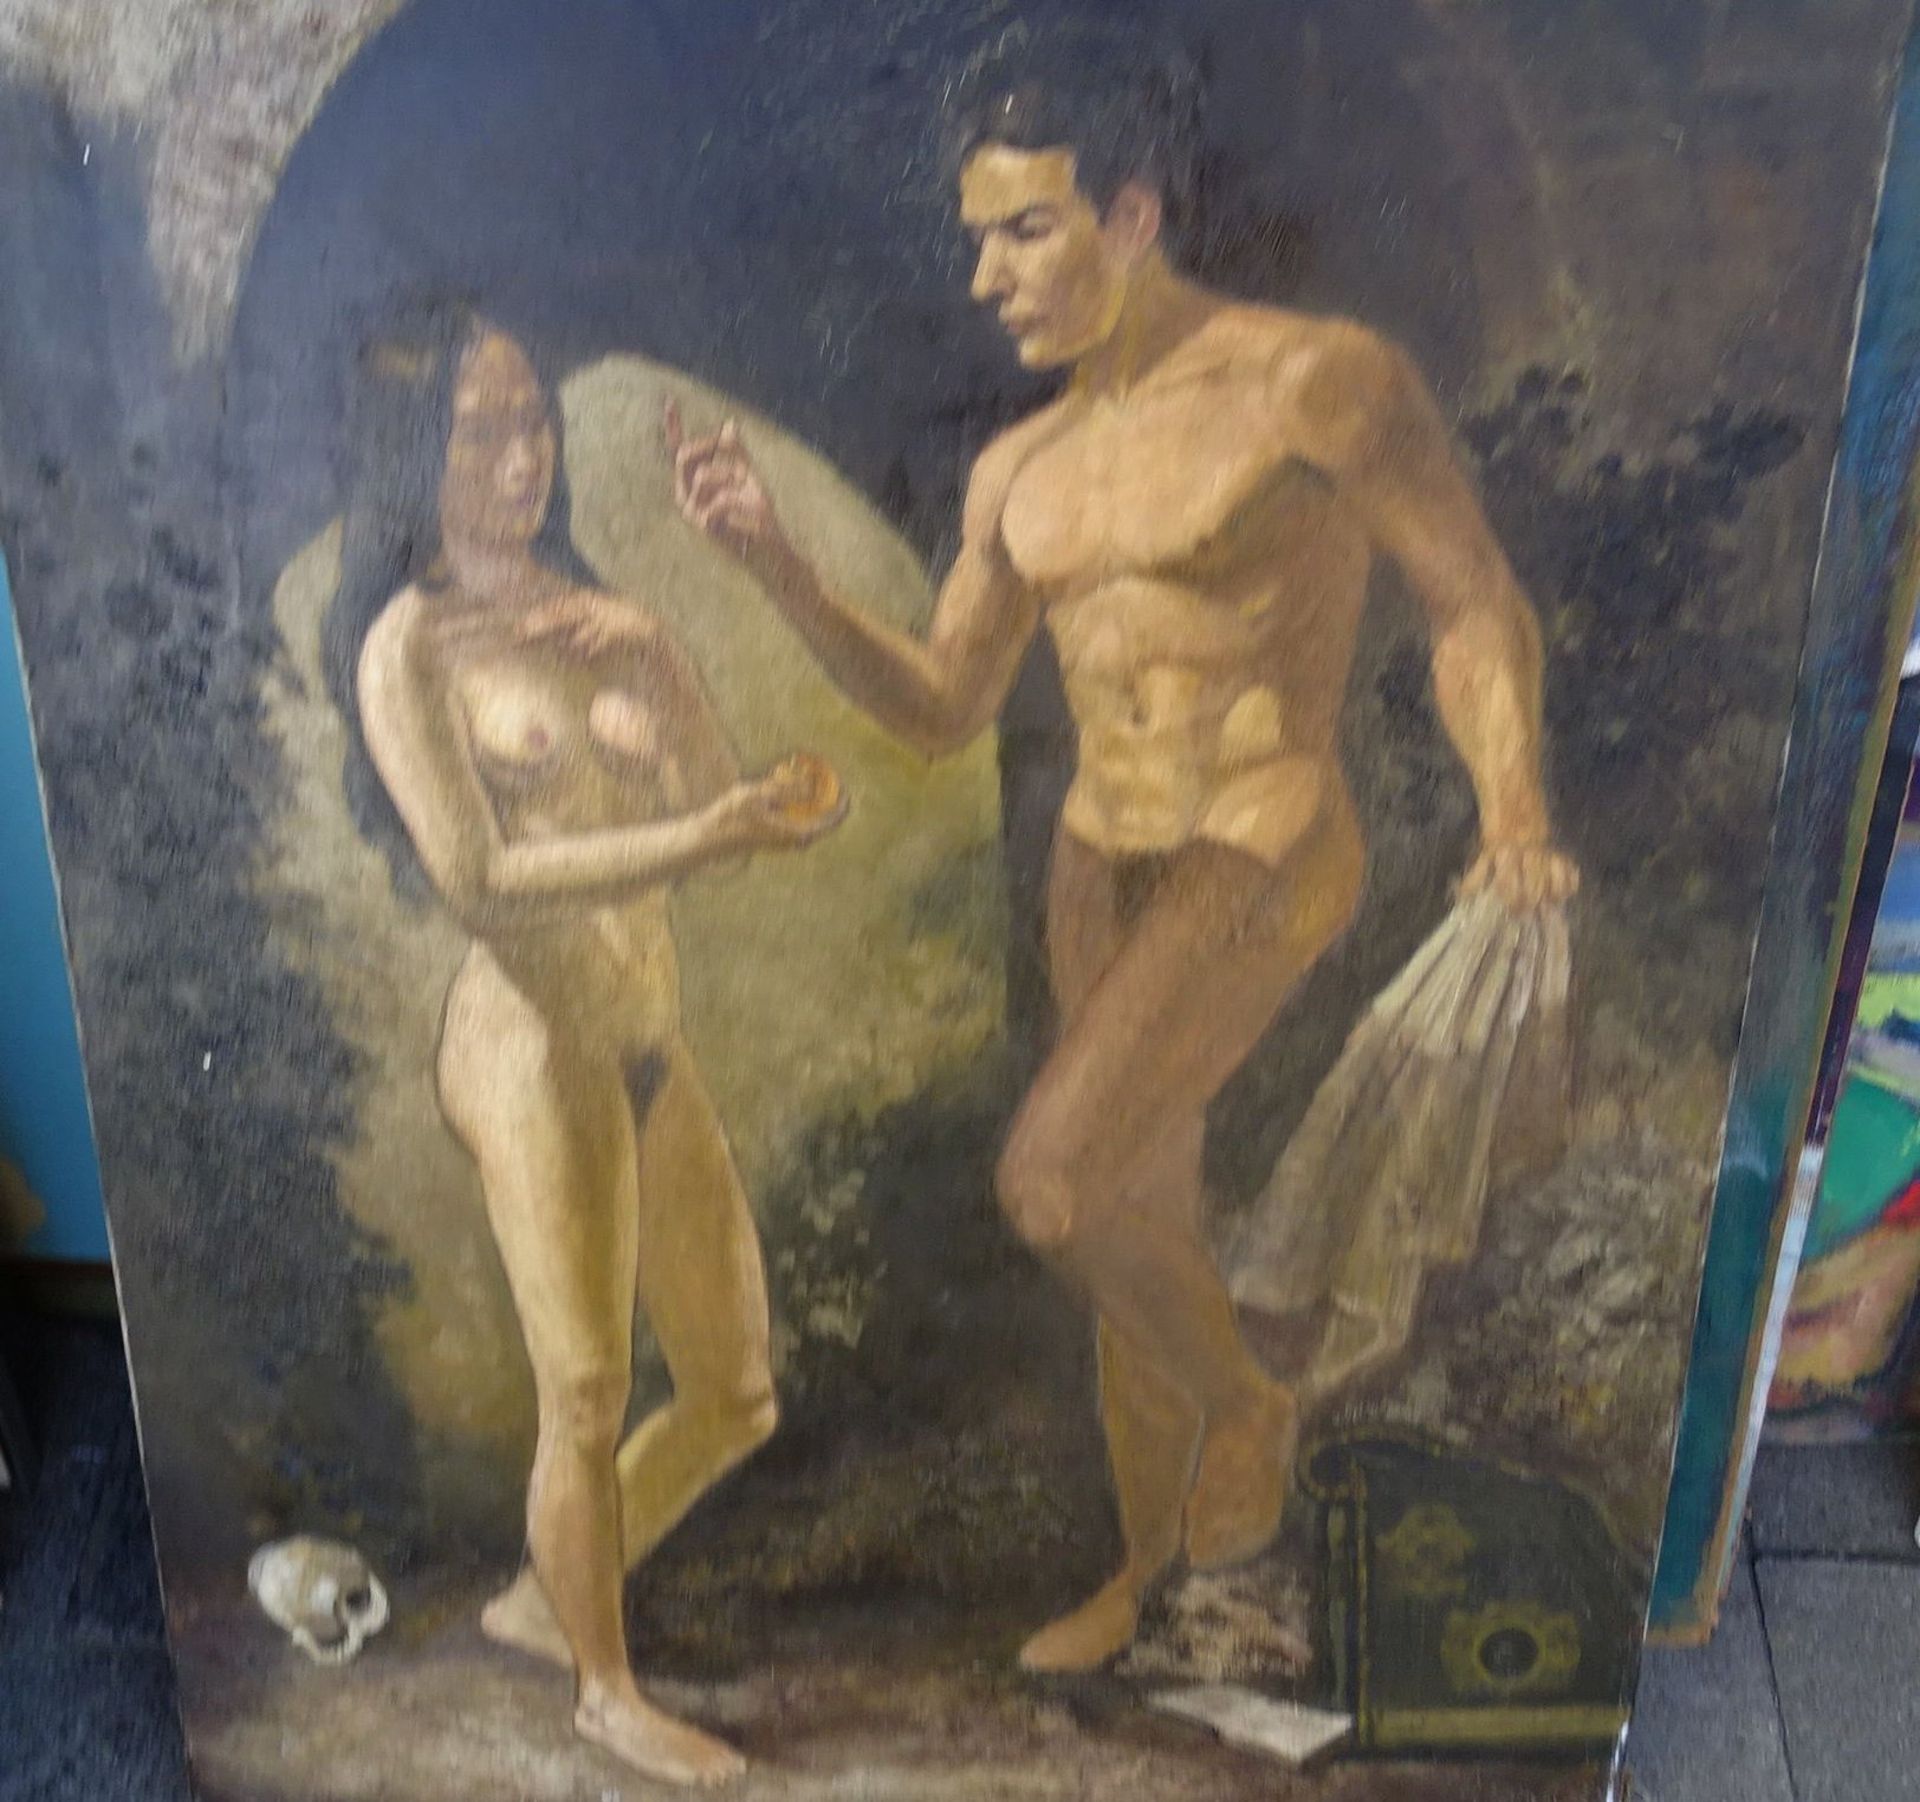 unleserlich signiert "Junges Paar", Öl/Leinen, 91x70 cm